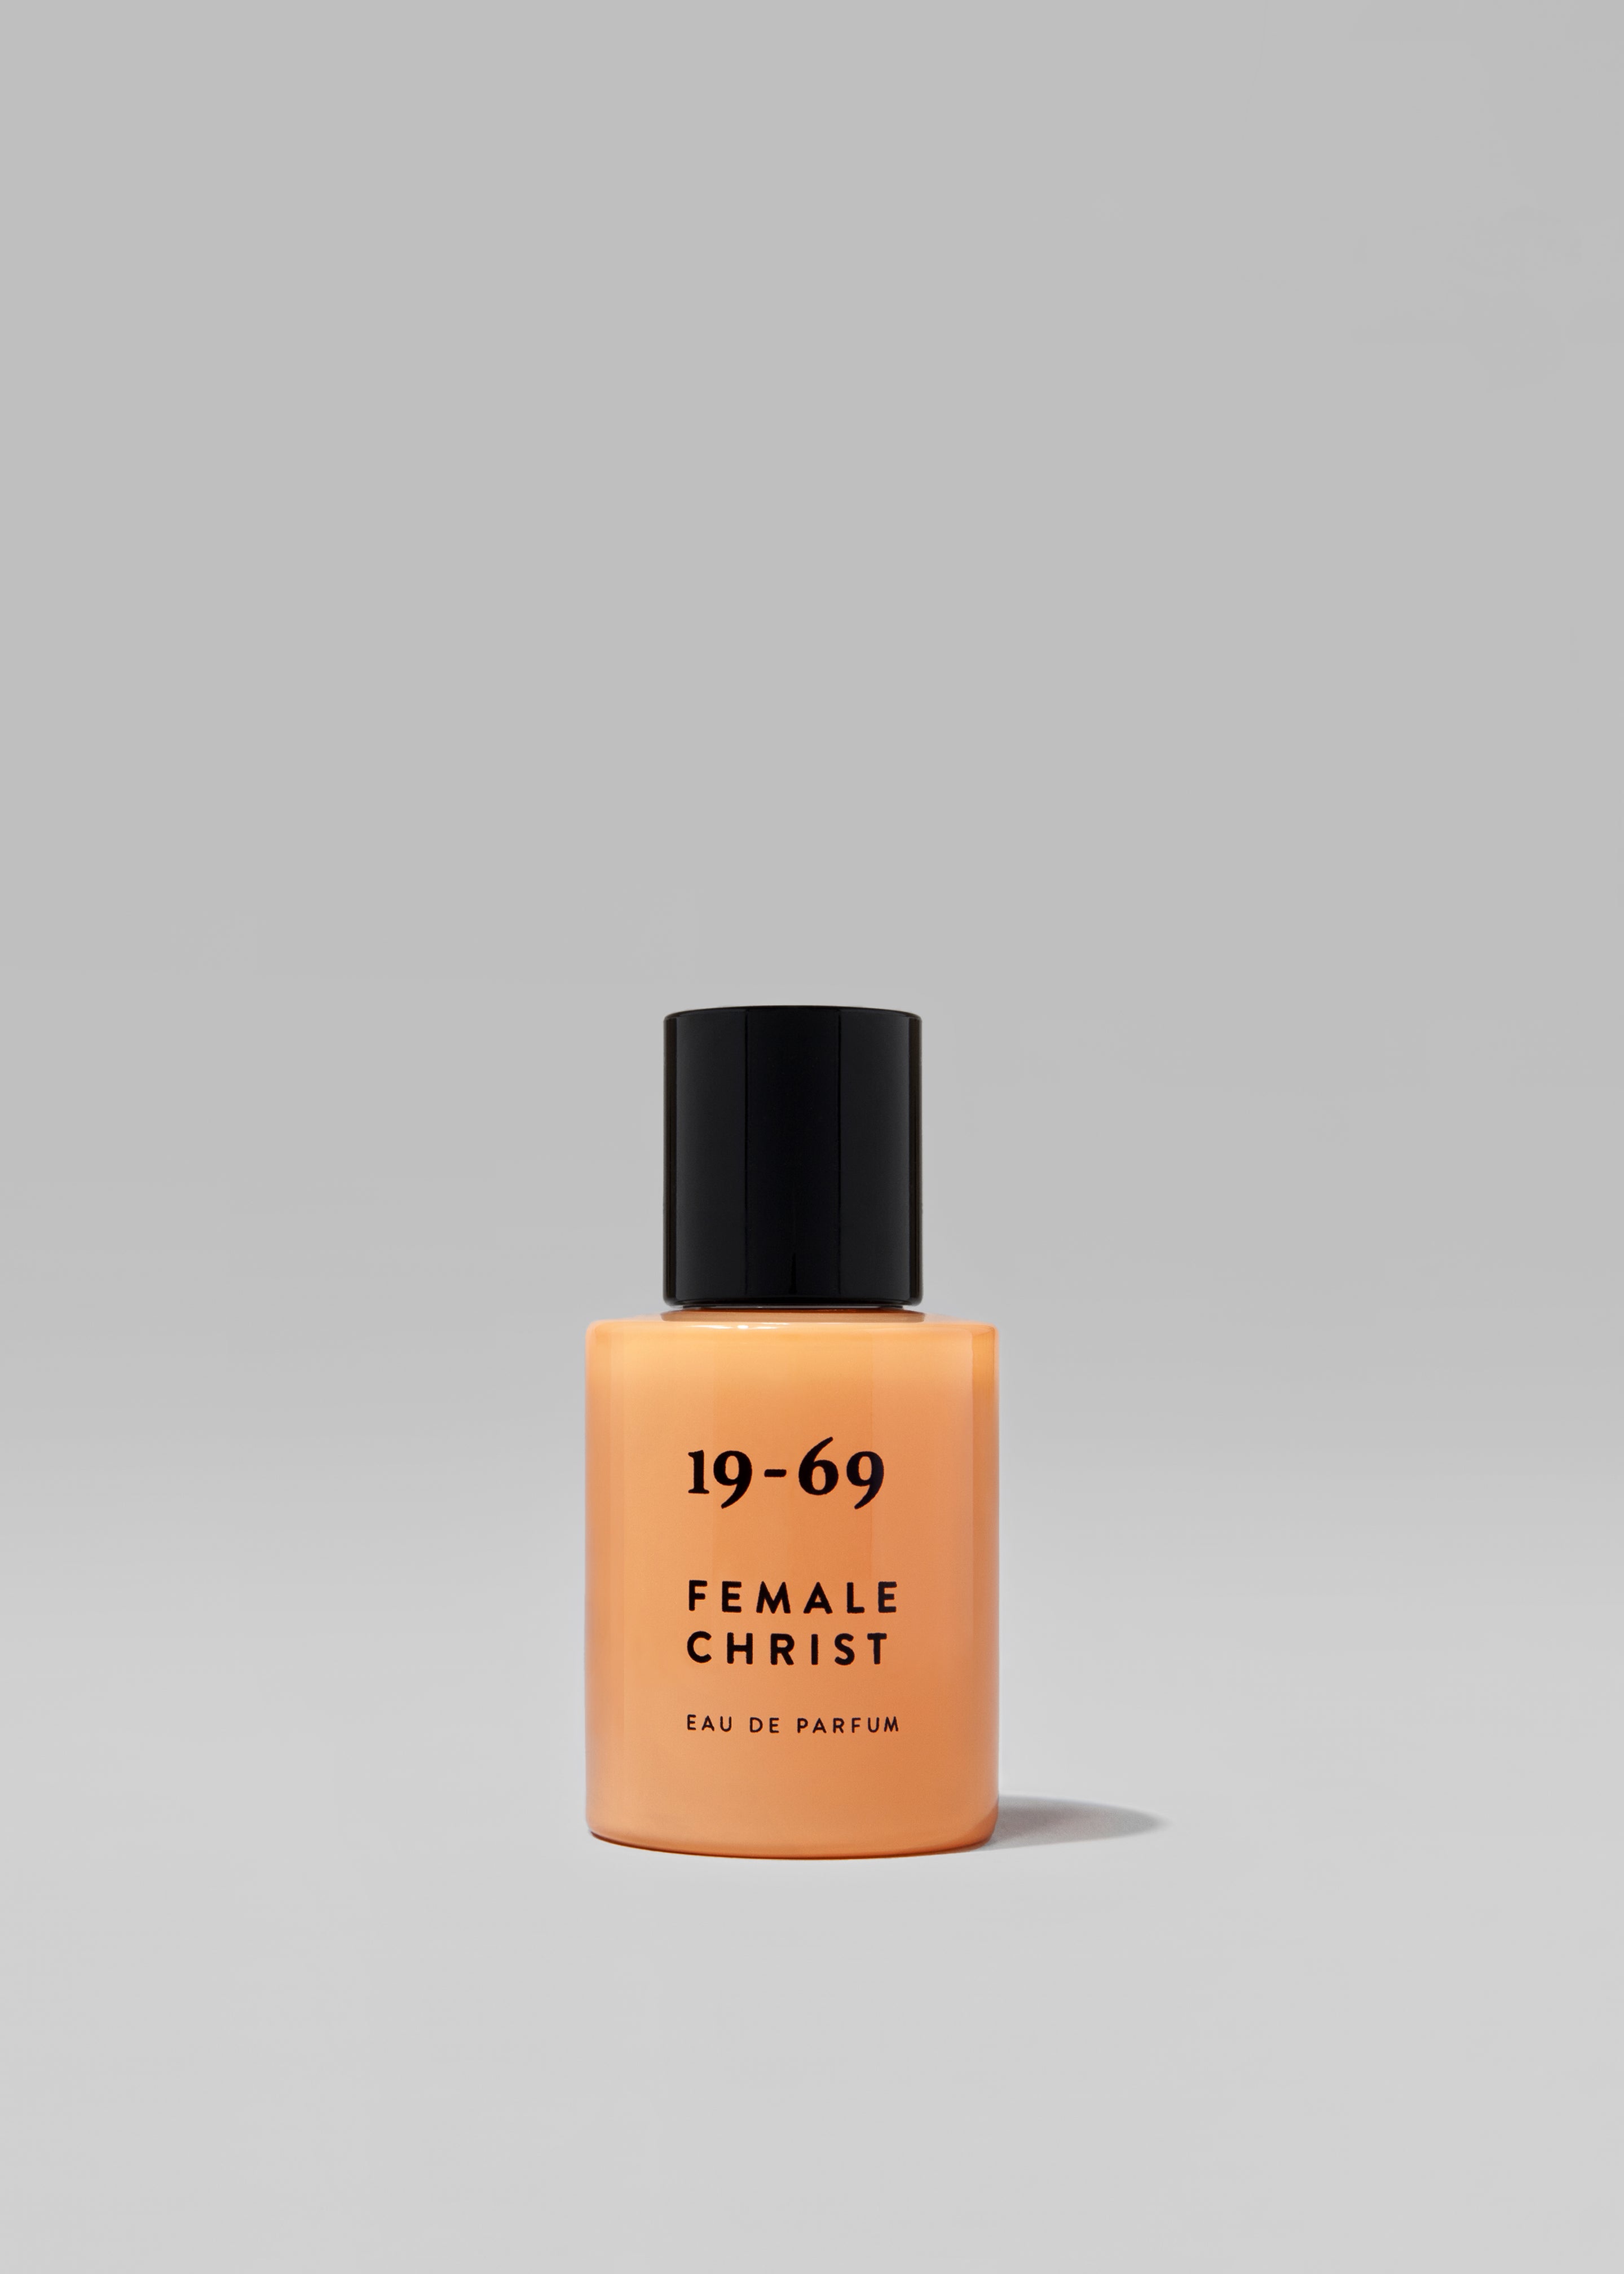 19-69 Female Christ Eau de Parfum - 3